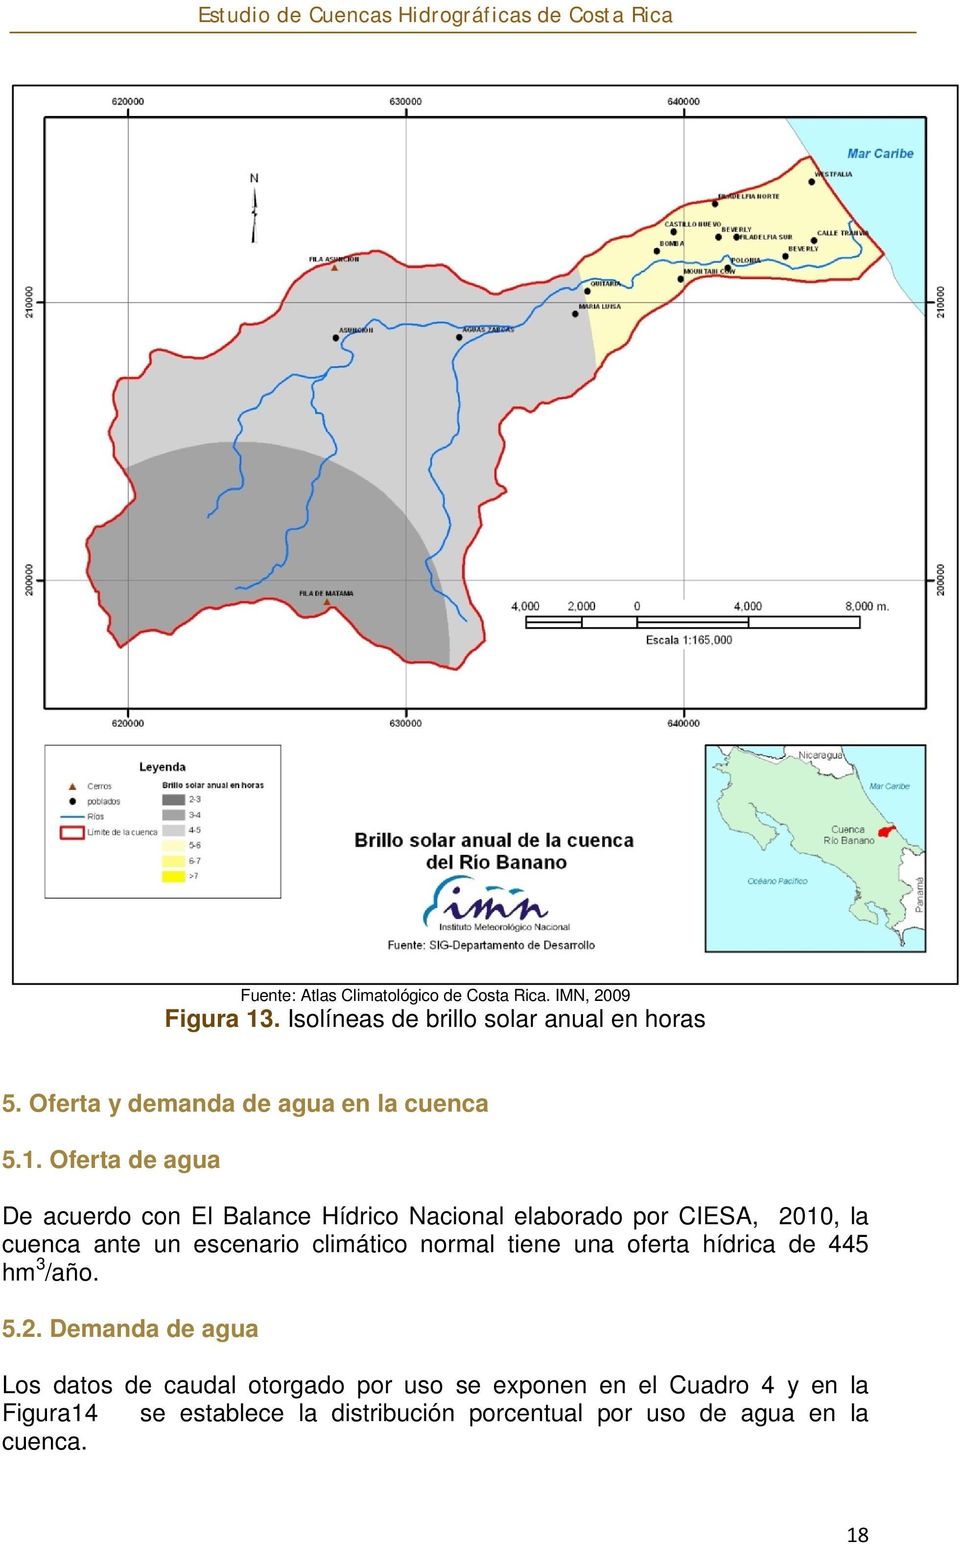 Oferta de agua De acuerdo con El Balance Hídrico Nacional elaborado por CIESA, 2010, la cuenca ante un escenario climático